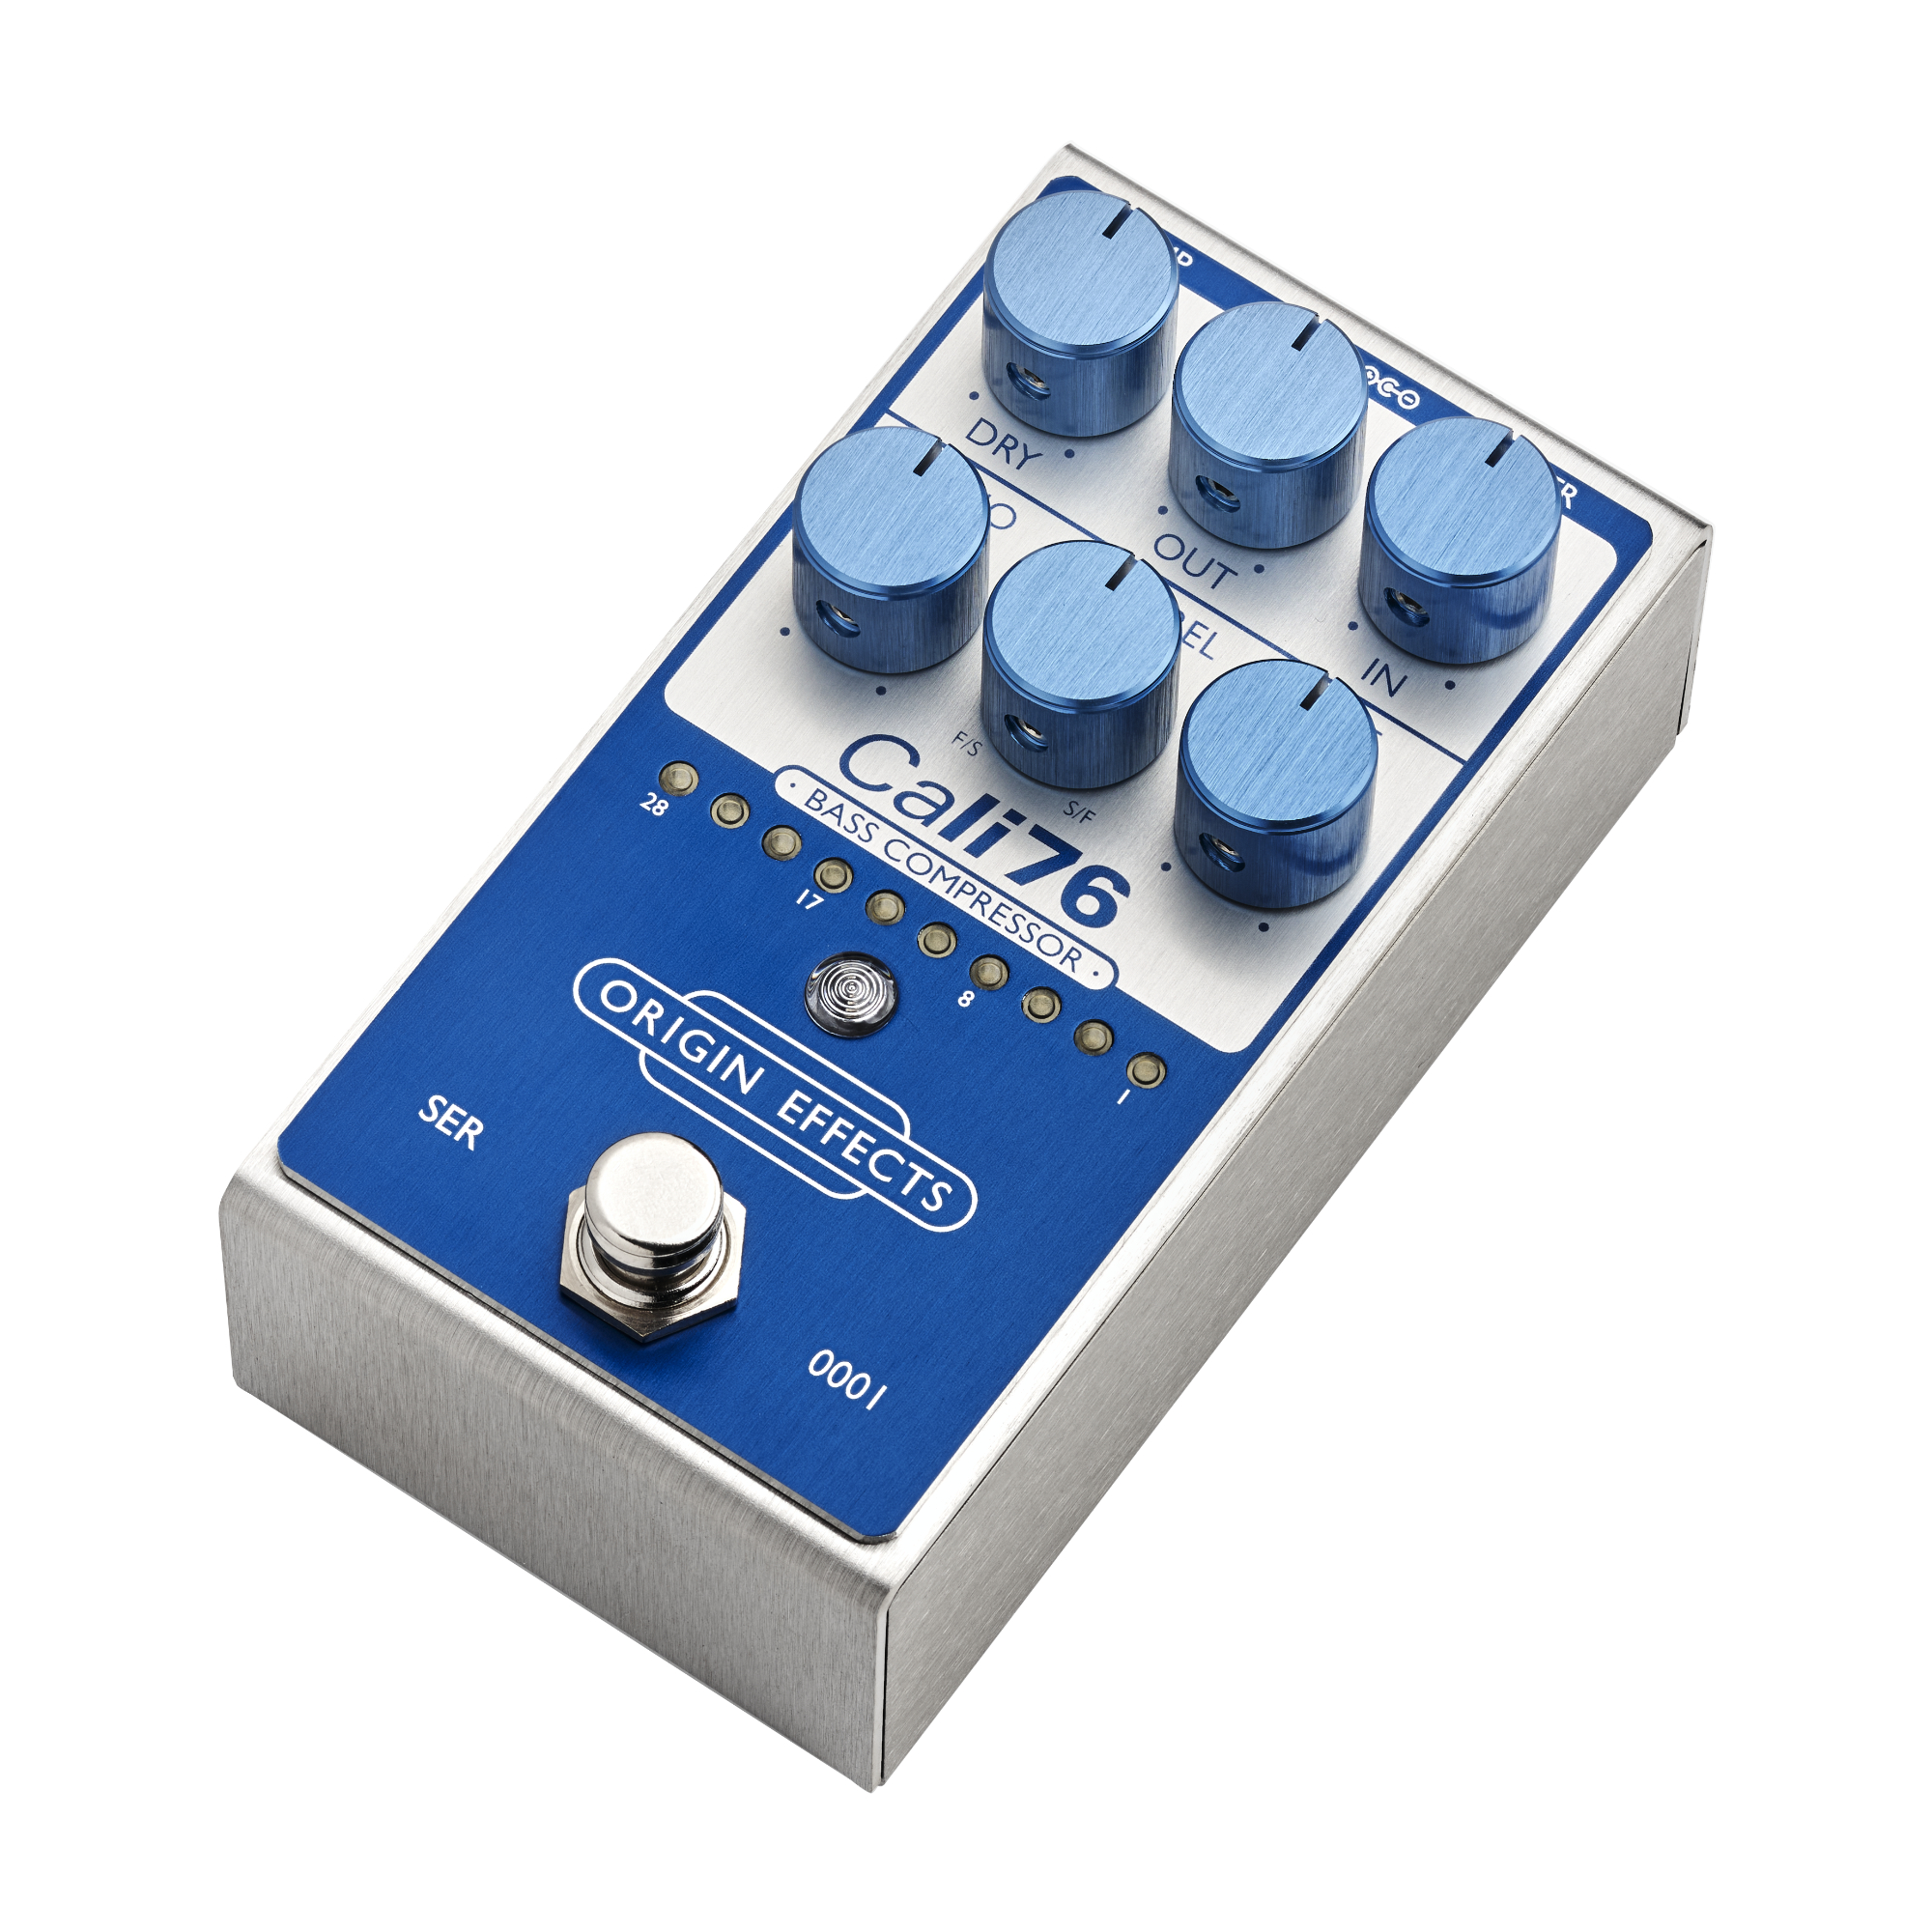 Origin Effects Cali76 Bass Compressor Super Vintage Blue 2024 - Kompressor/Sustain/Noise gate Effektpedal - Variation 1